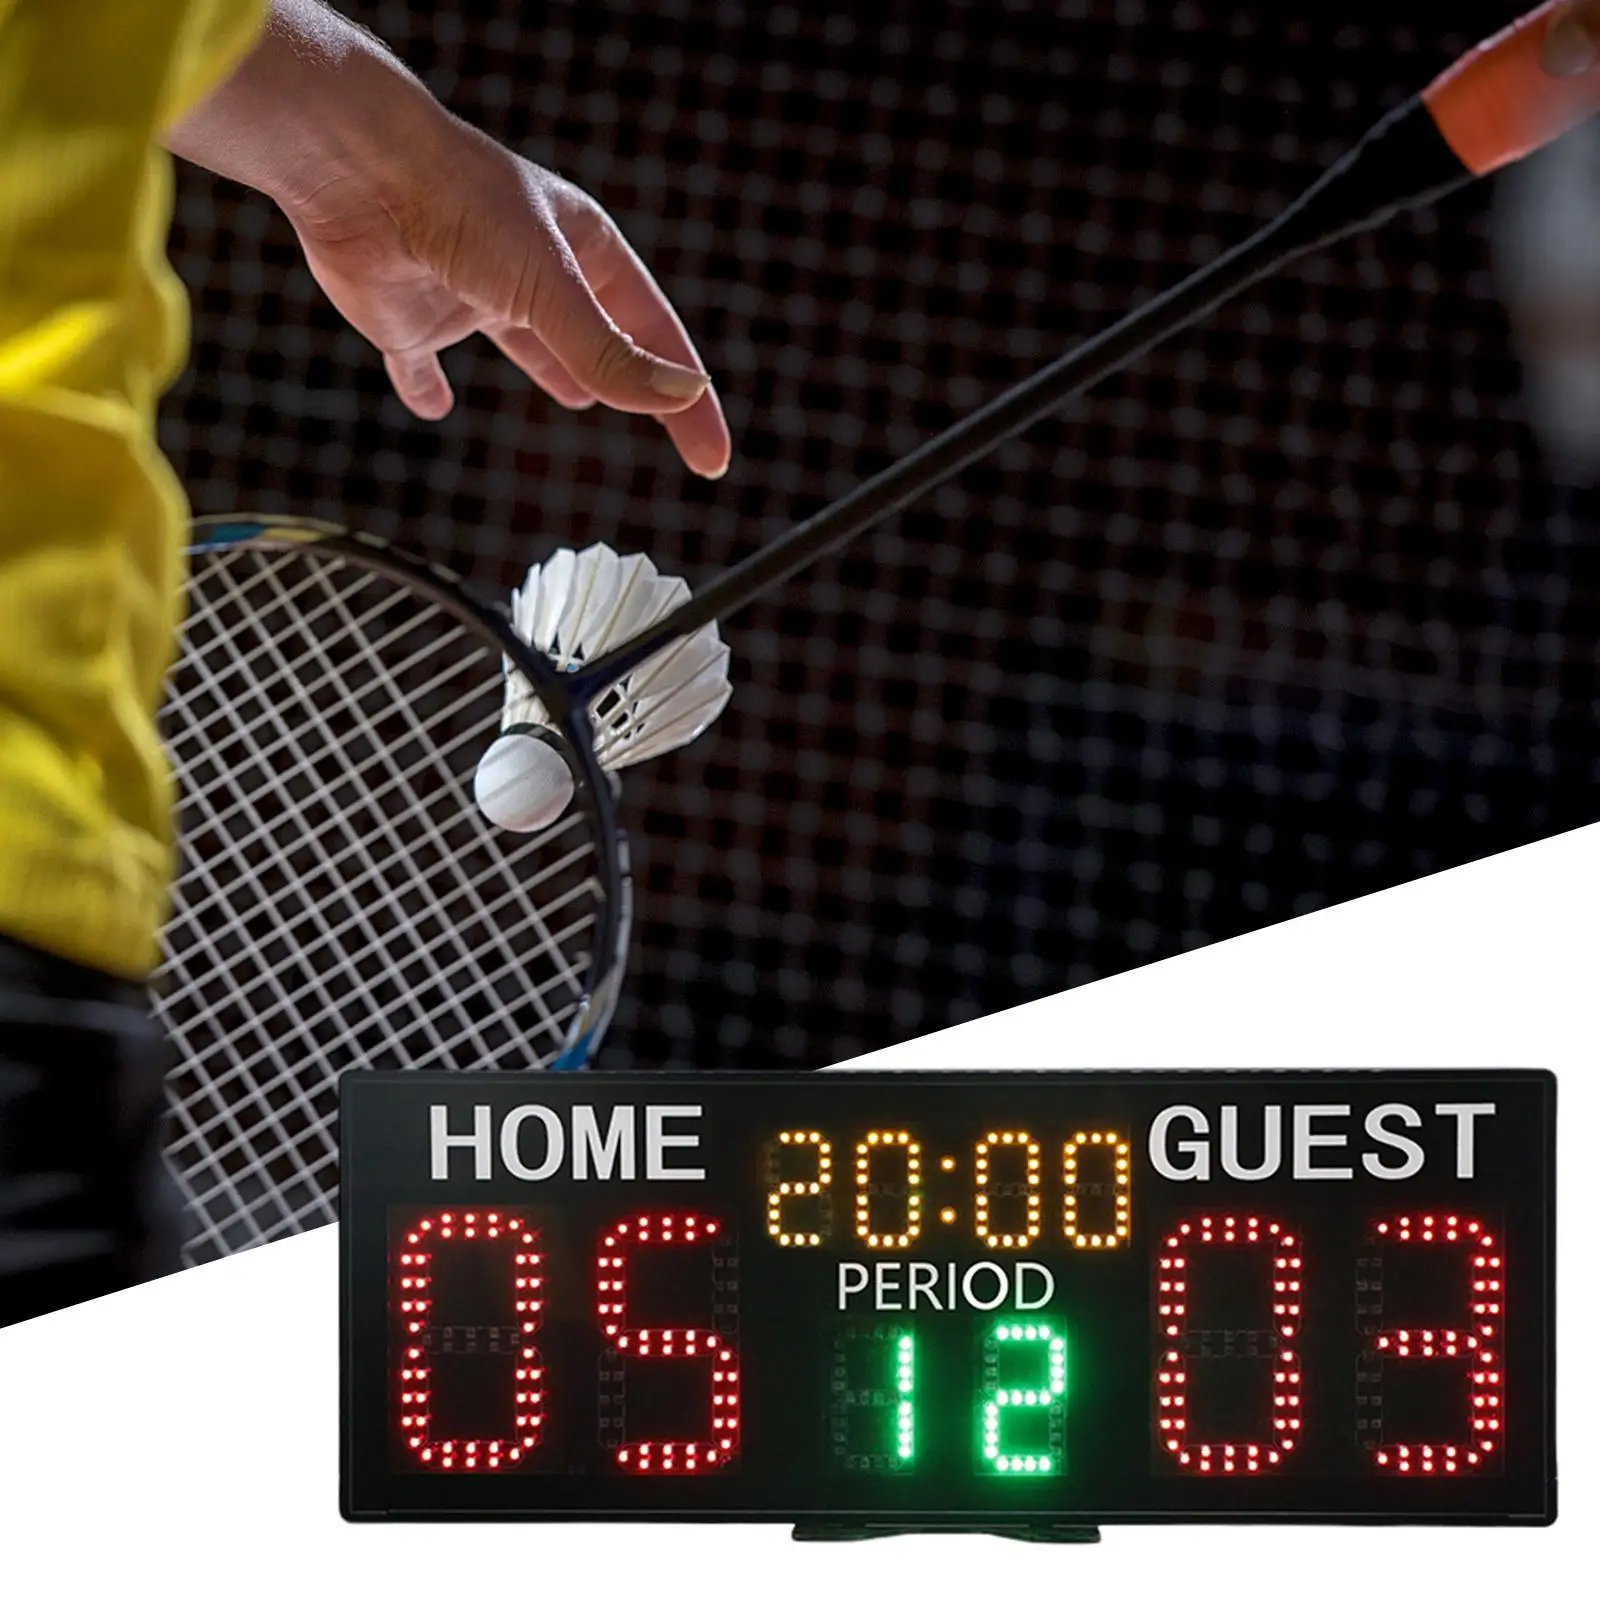 Electronic Scoreboard Tabletop Digital Score Board LED Scoreboard Tennis Score Keeper for Football Baseball Table Tennis Sports